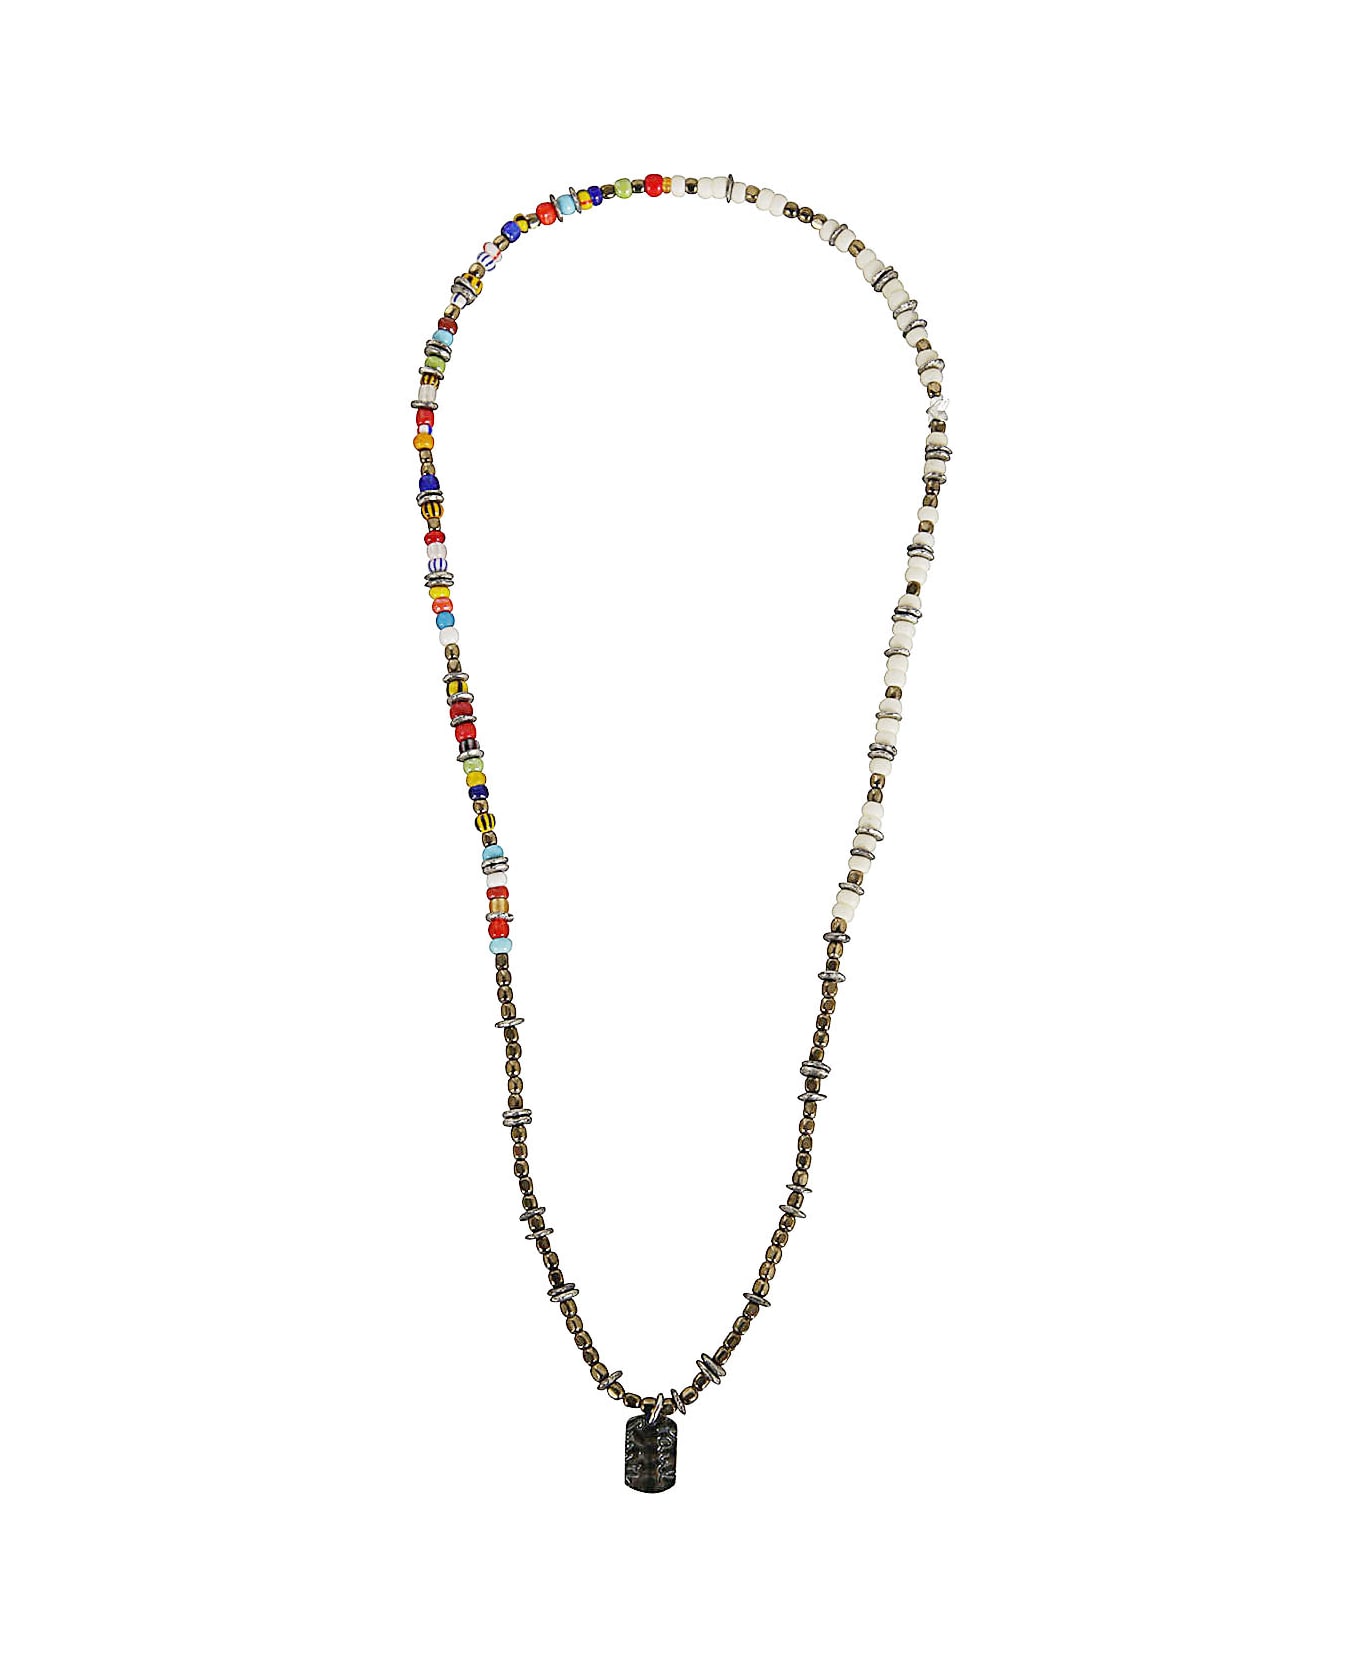 Paul Smith Men Necklace Mixed Bead - Multicolour